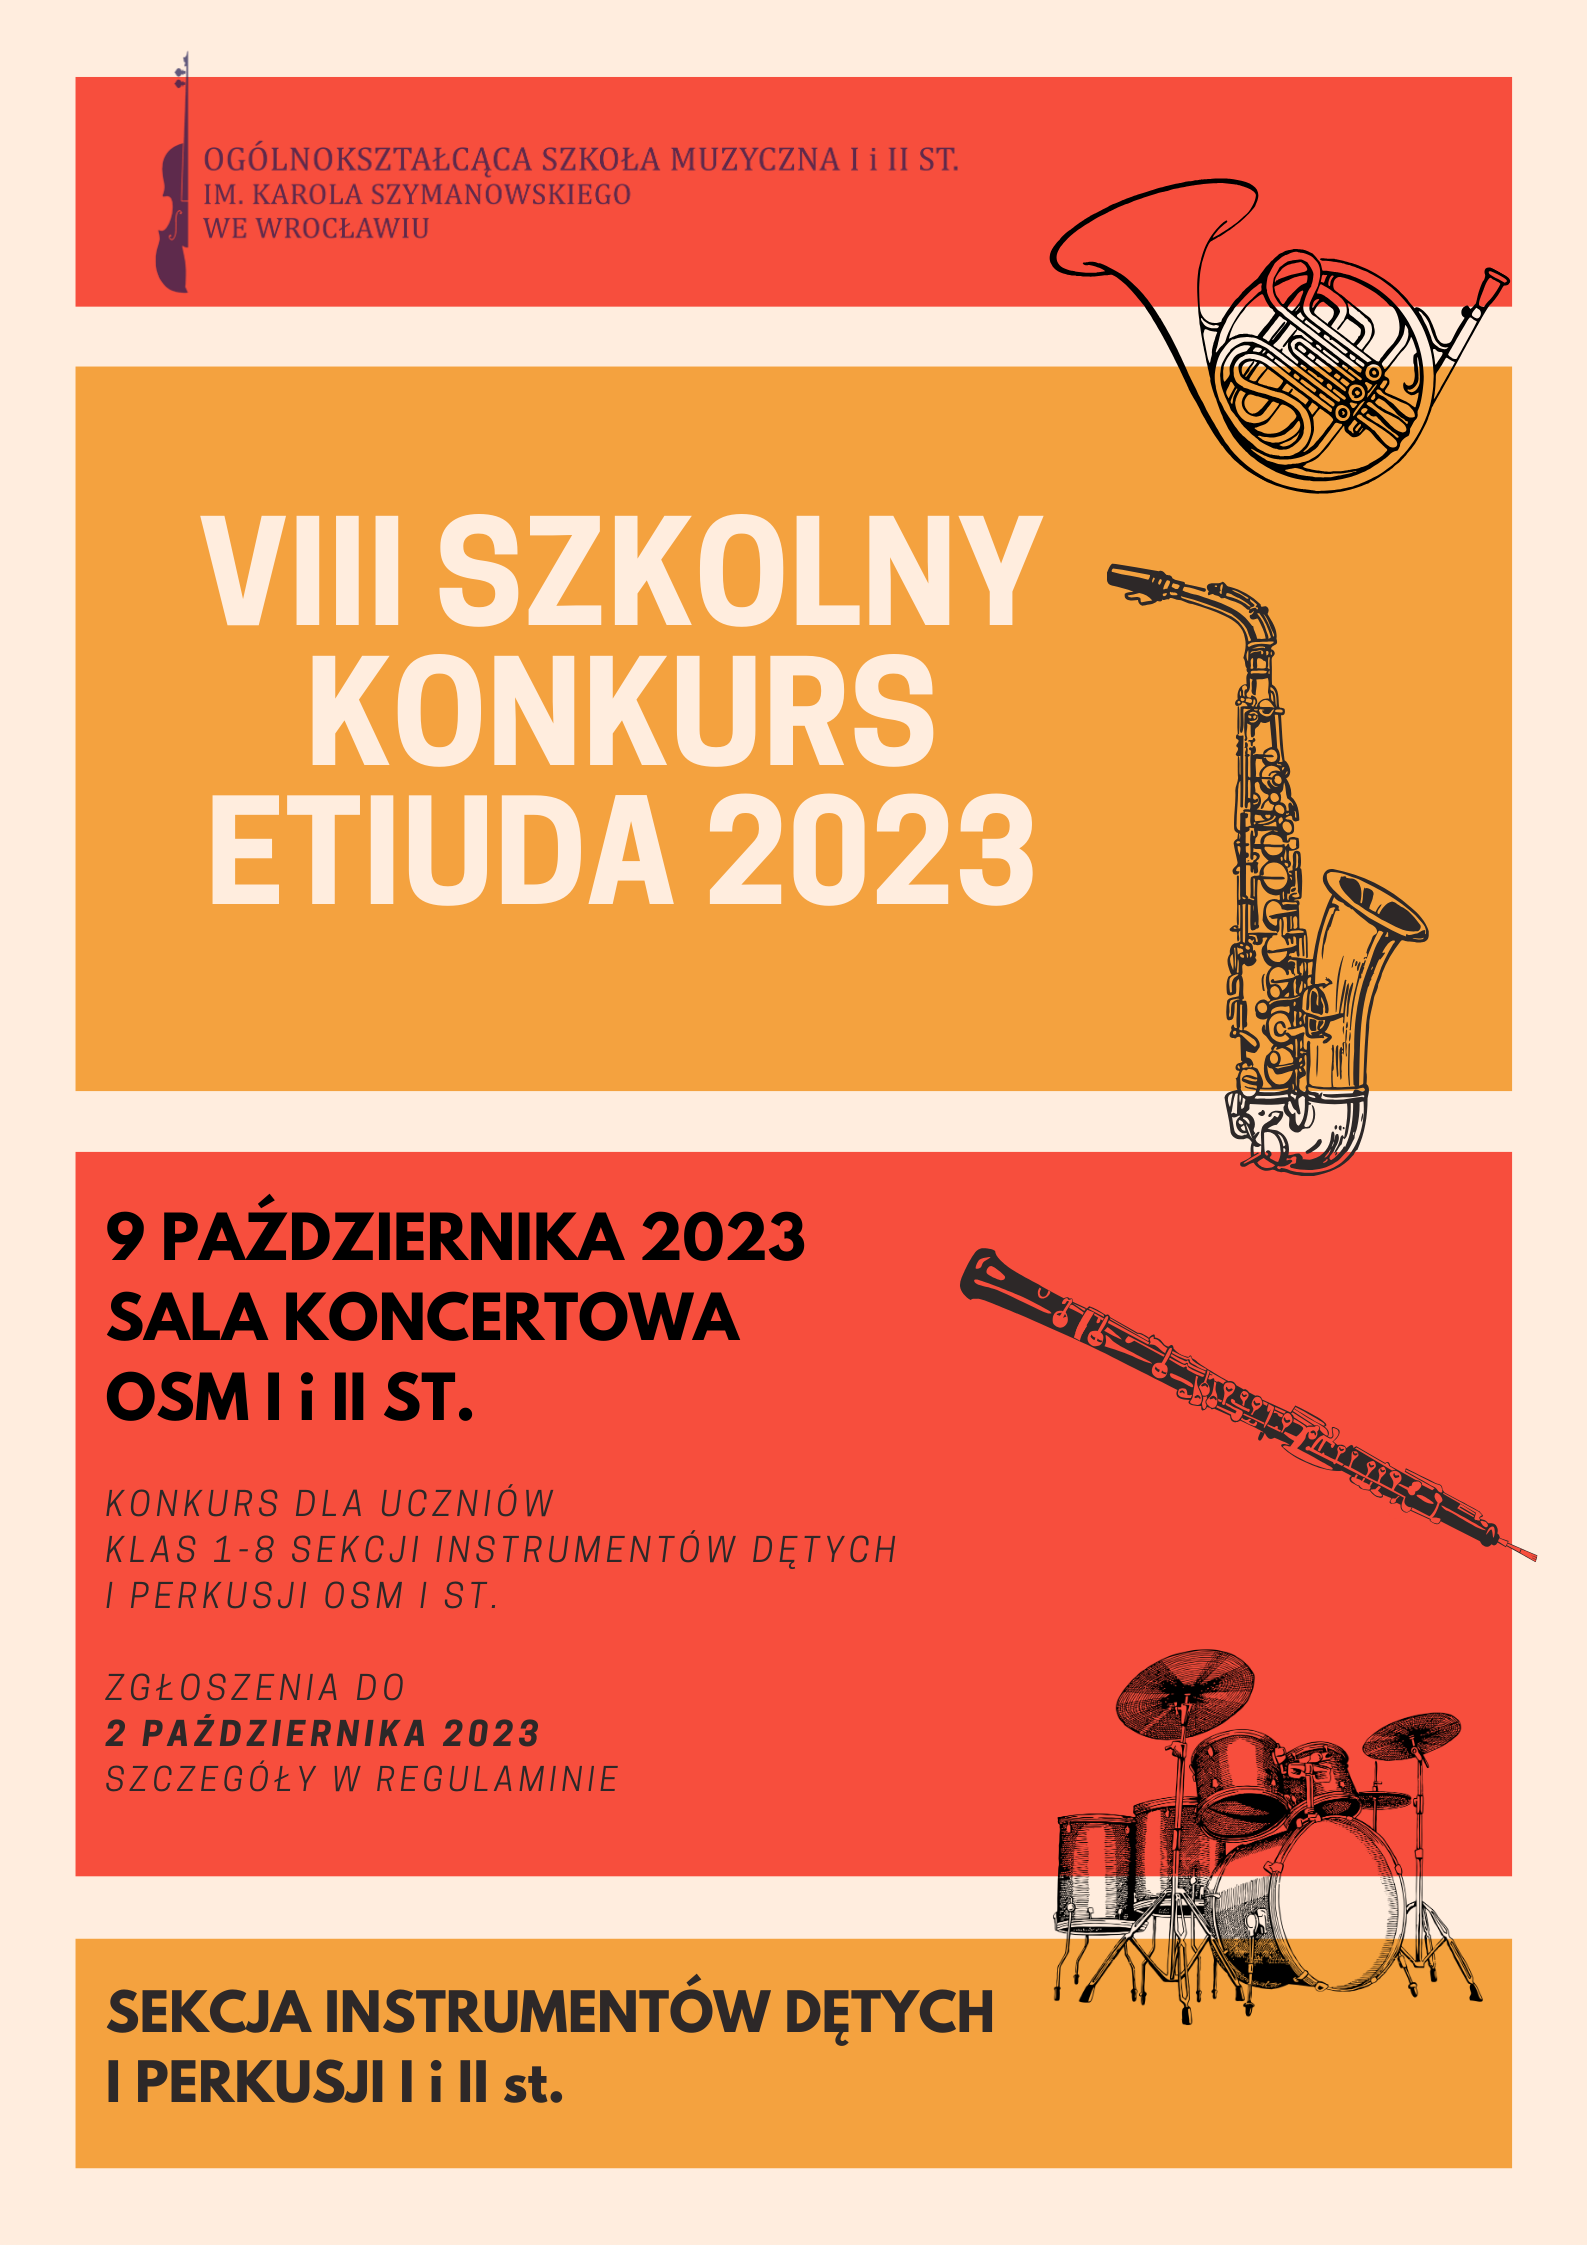 plakat w pomarańczowo-czerwonej tonacji, zawiera grafiki instrumentów dętych oraz logo szkoły i napisy z zasadami konkursu